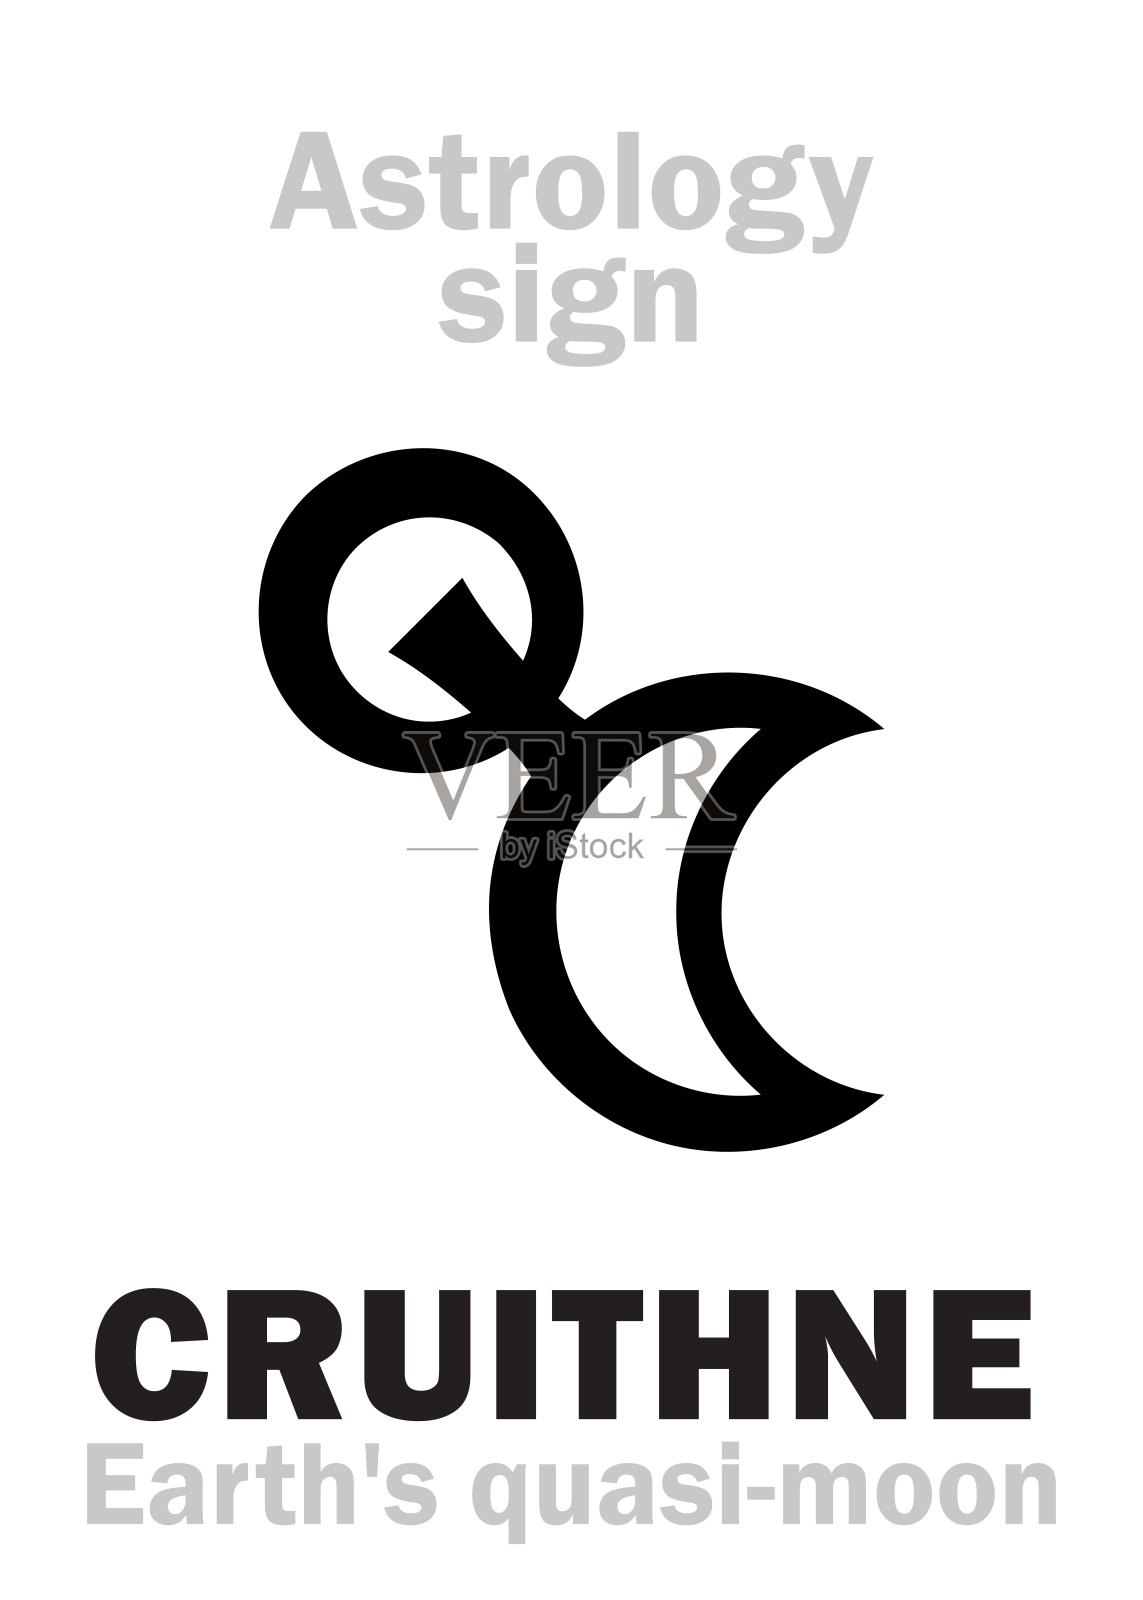 占星字母表:CRUITHNE，地球的准月亮(特洛伊小行星卫星)。象形文字符号(单符号)。插画图片素材